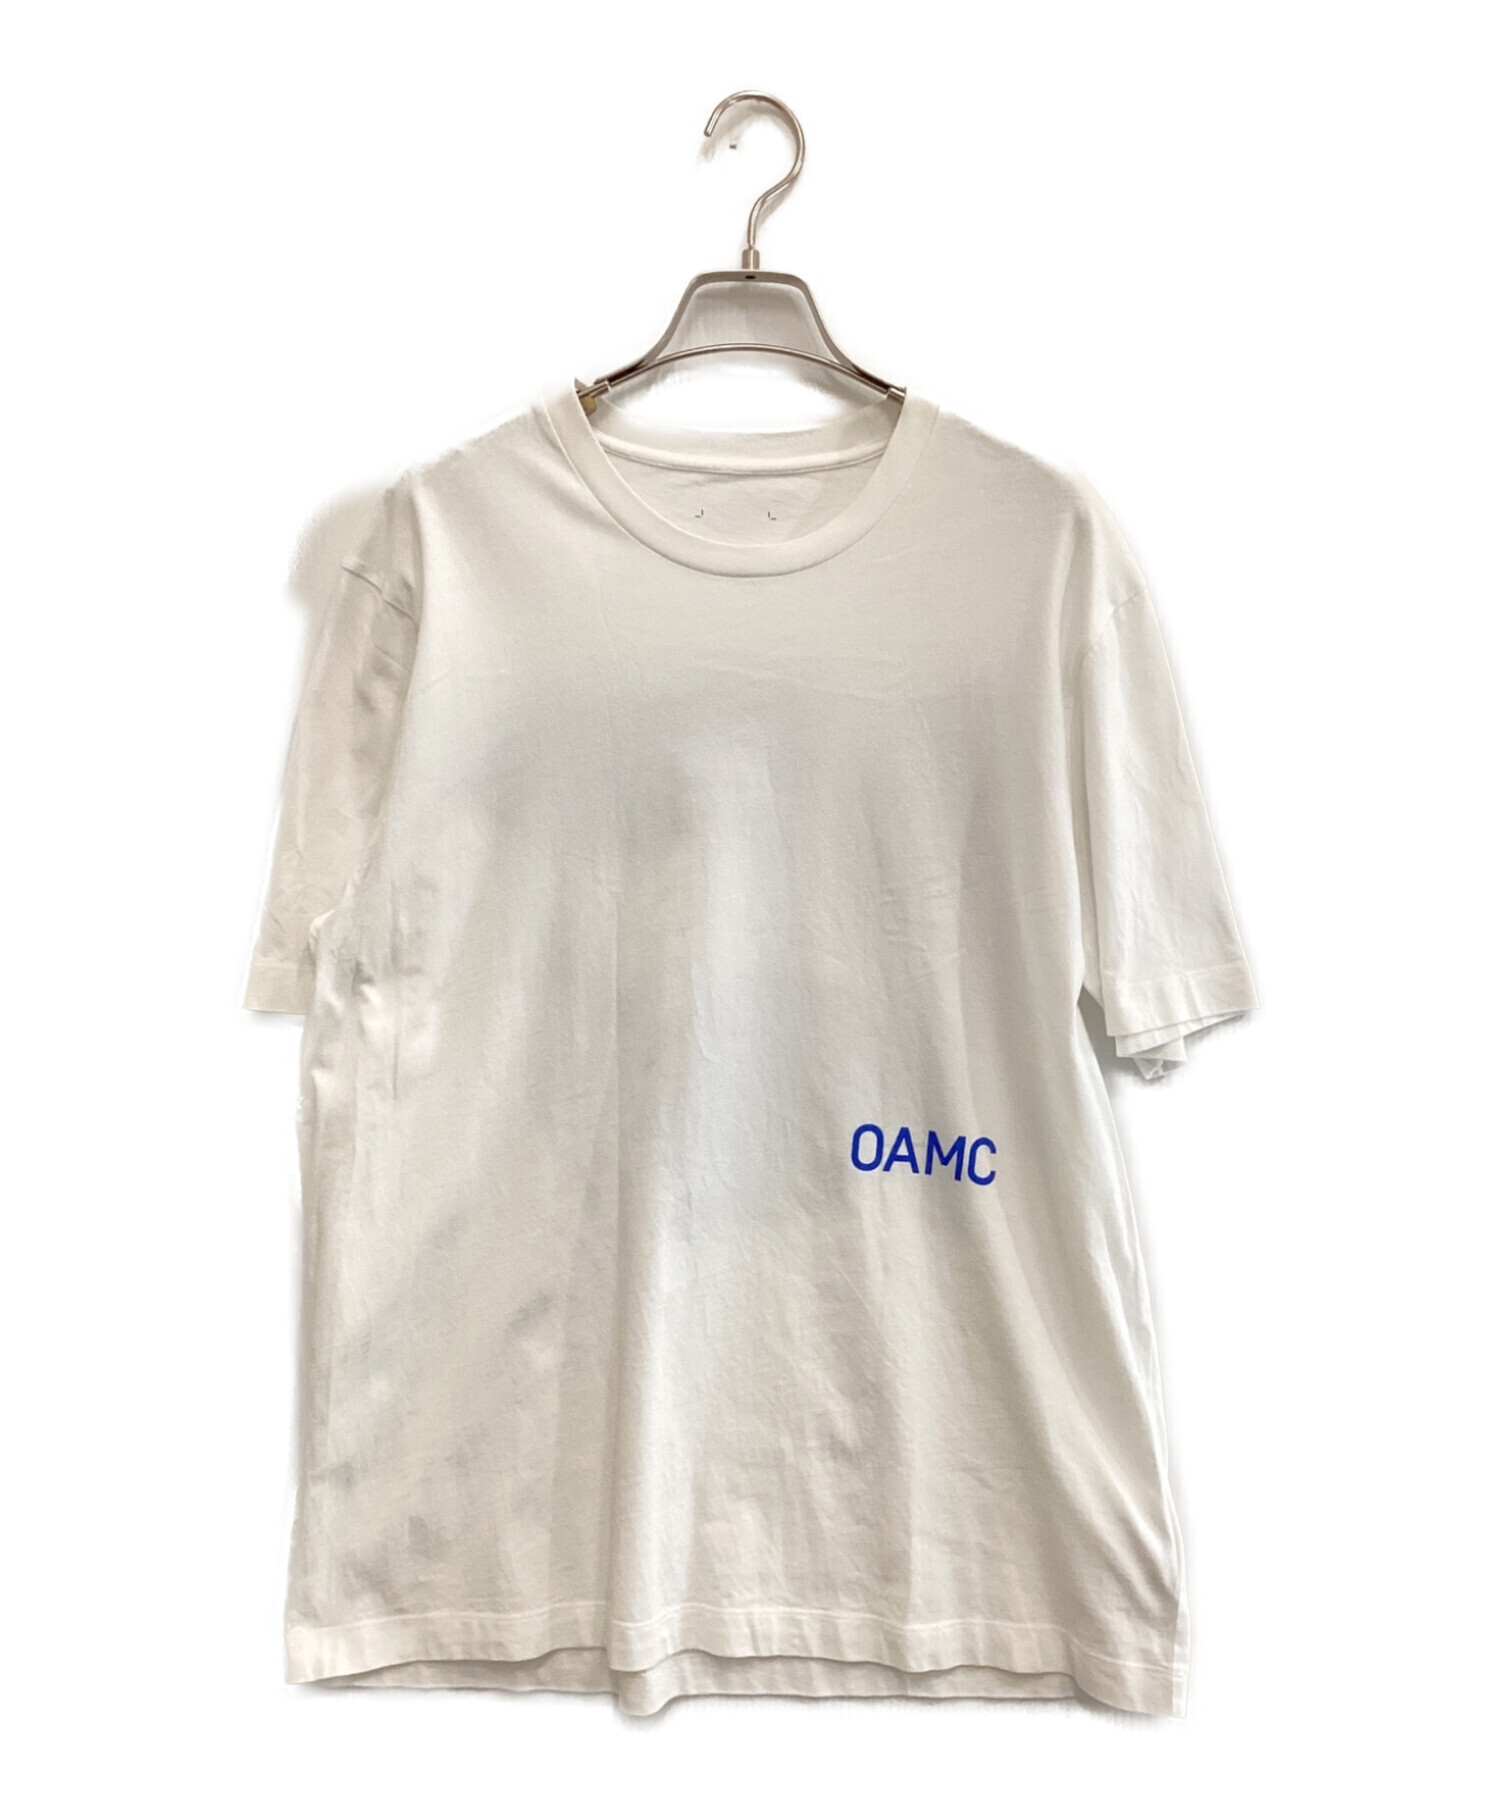 【新品未使用】OAMC Tシャツ Sサイズ  半袖Tシャツ